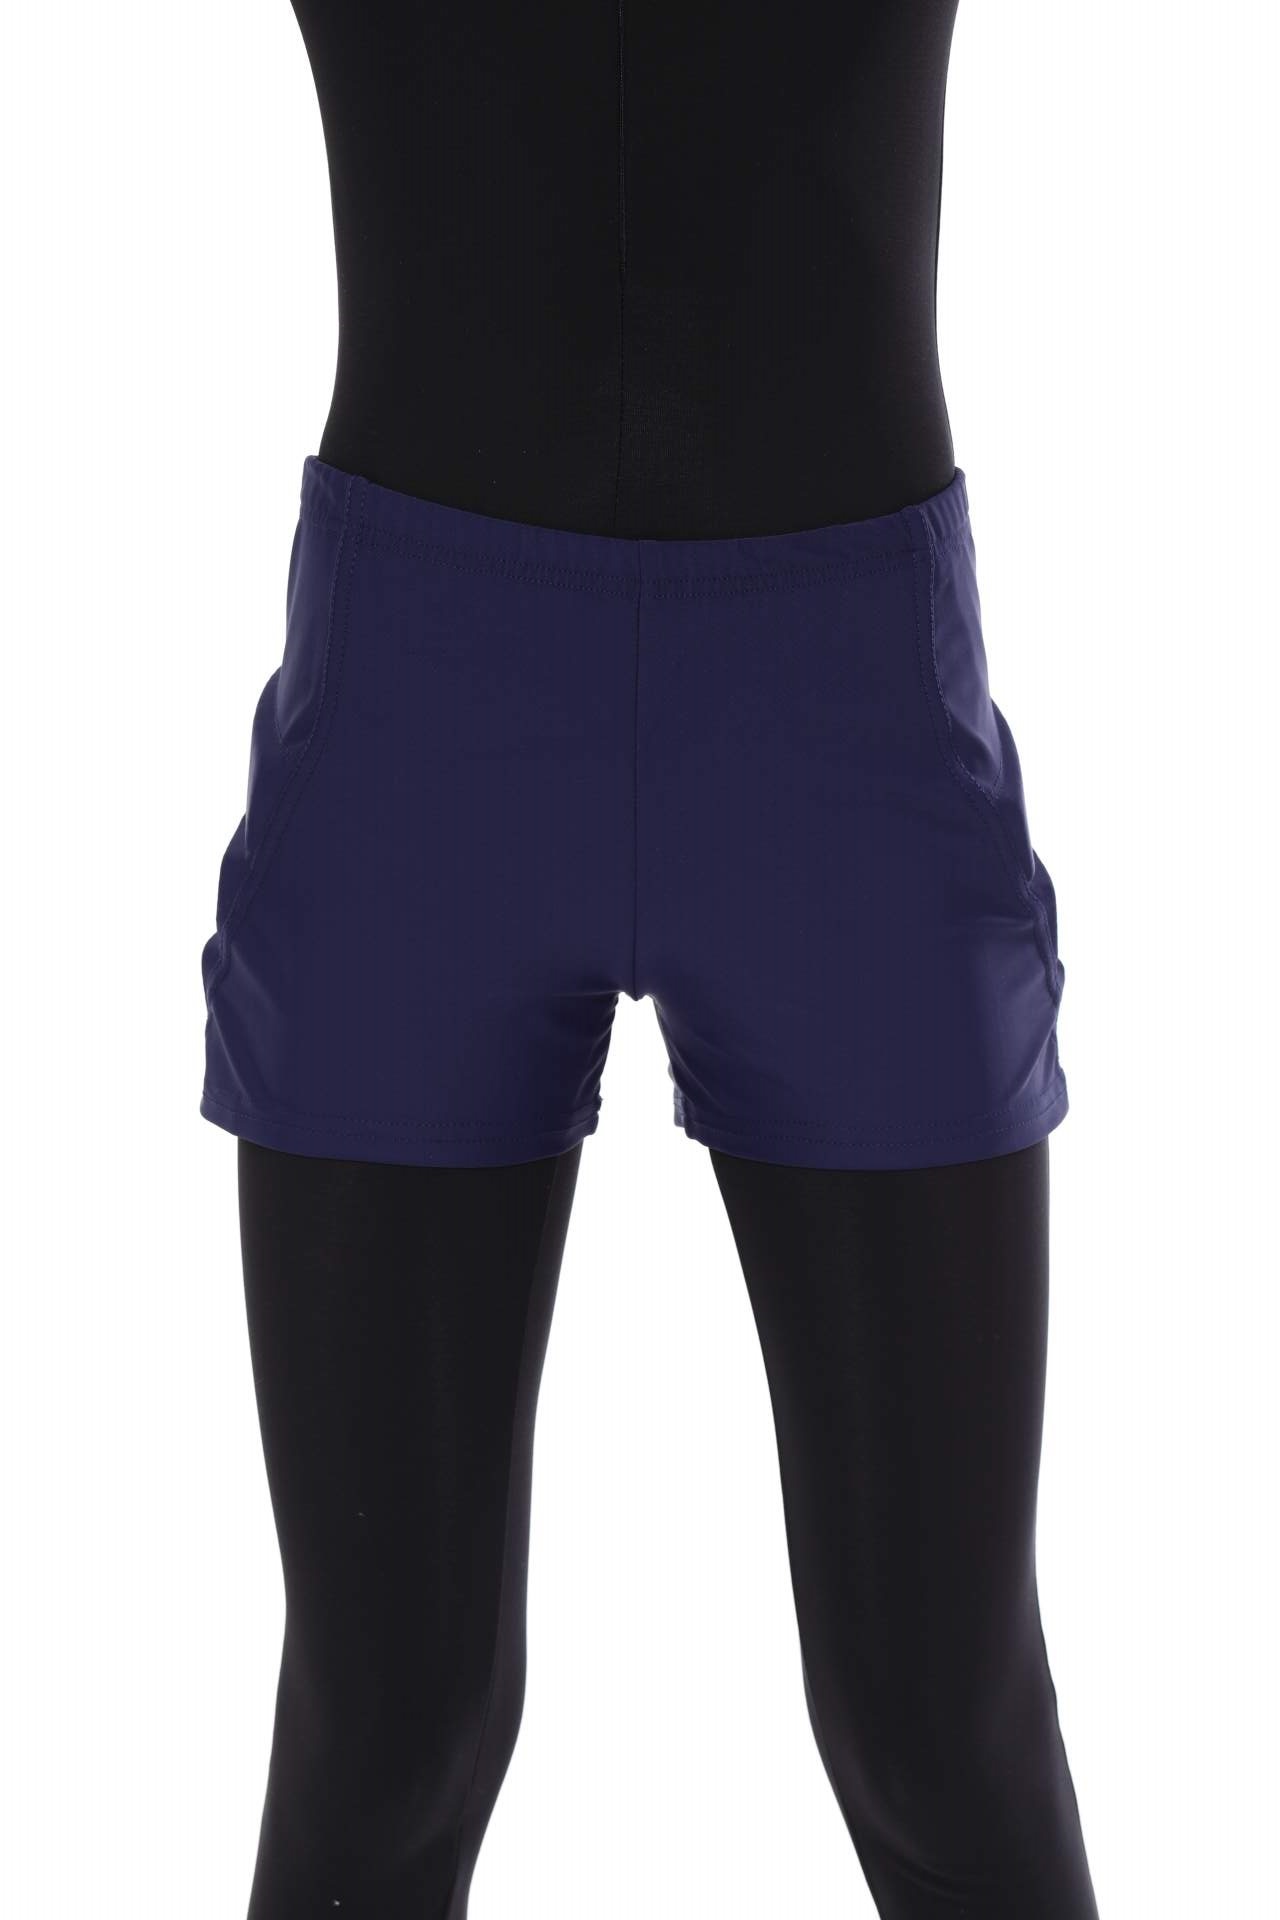 Защитные шорты для фигурного катания и роликов Chersa, цвет: темно-синий 110-116